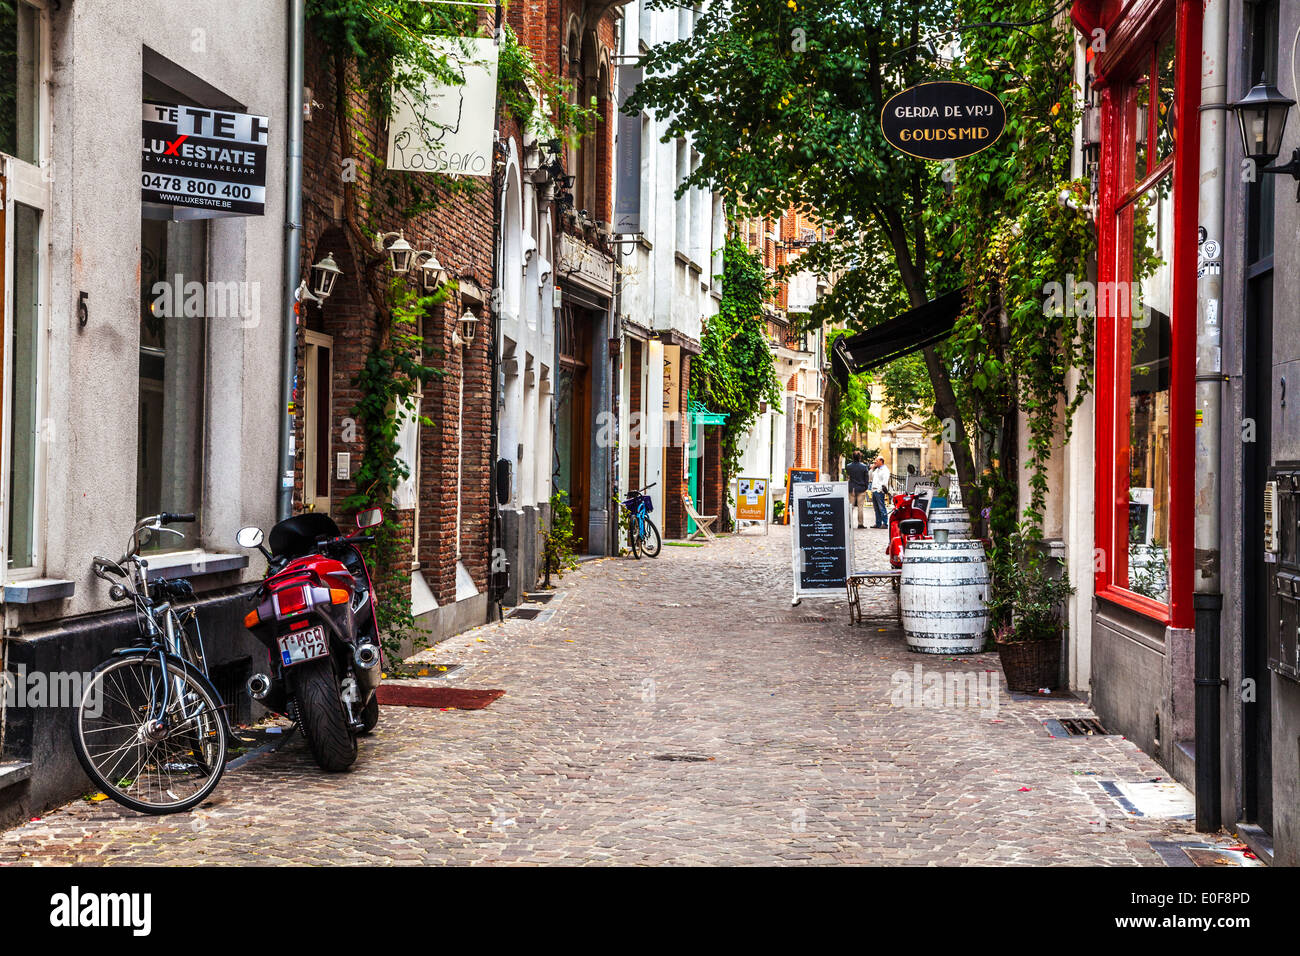 Un pittoresco stretto acciottolata strada laterale nella parte vecchia di Anversa, Belgio. Foto Stock